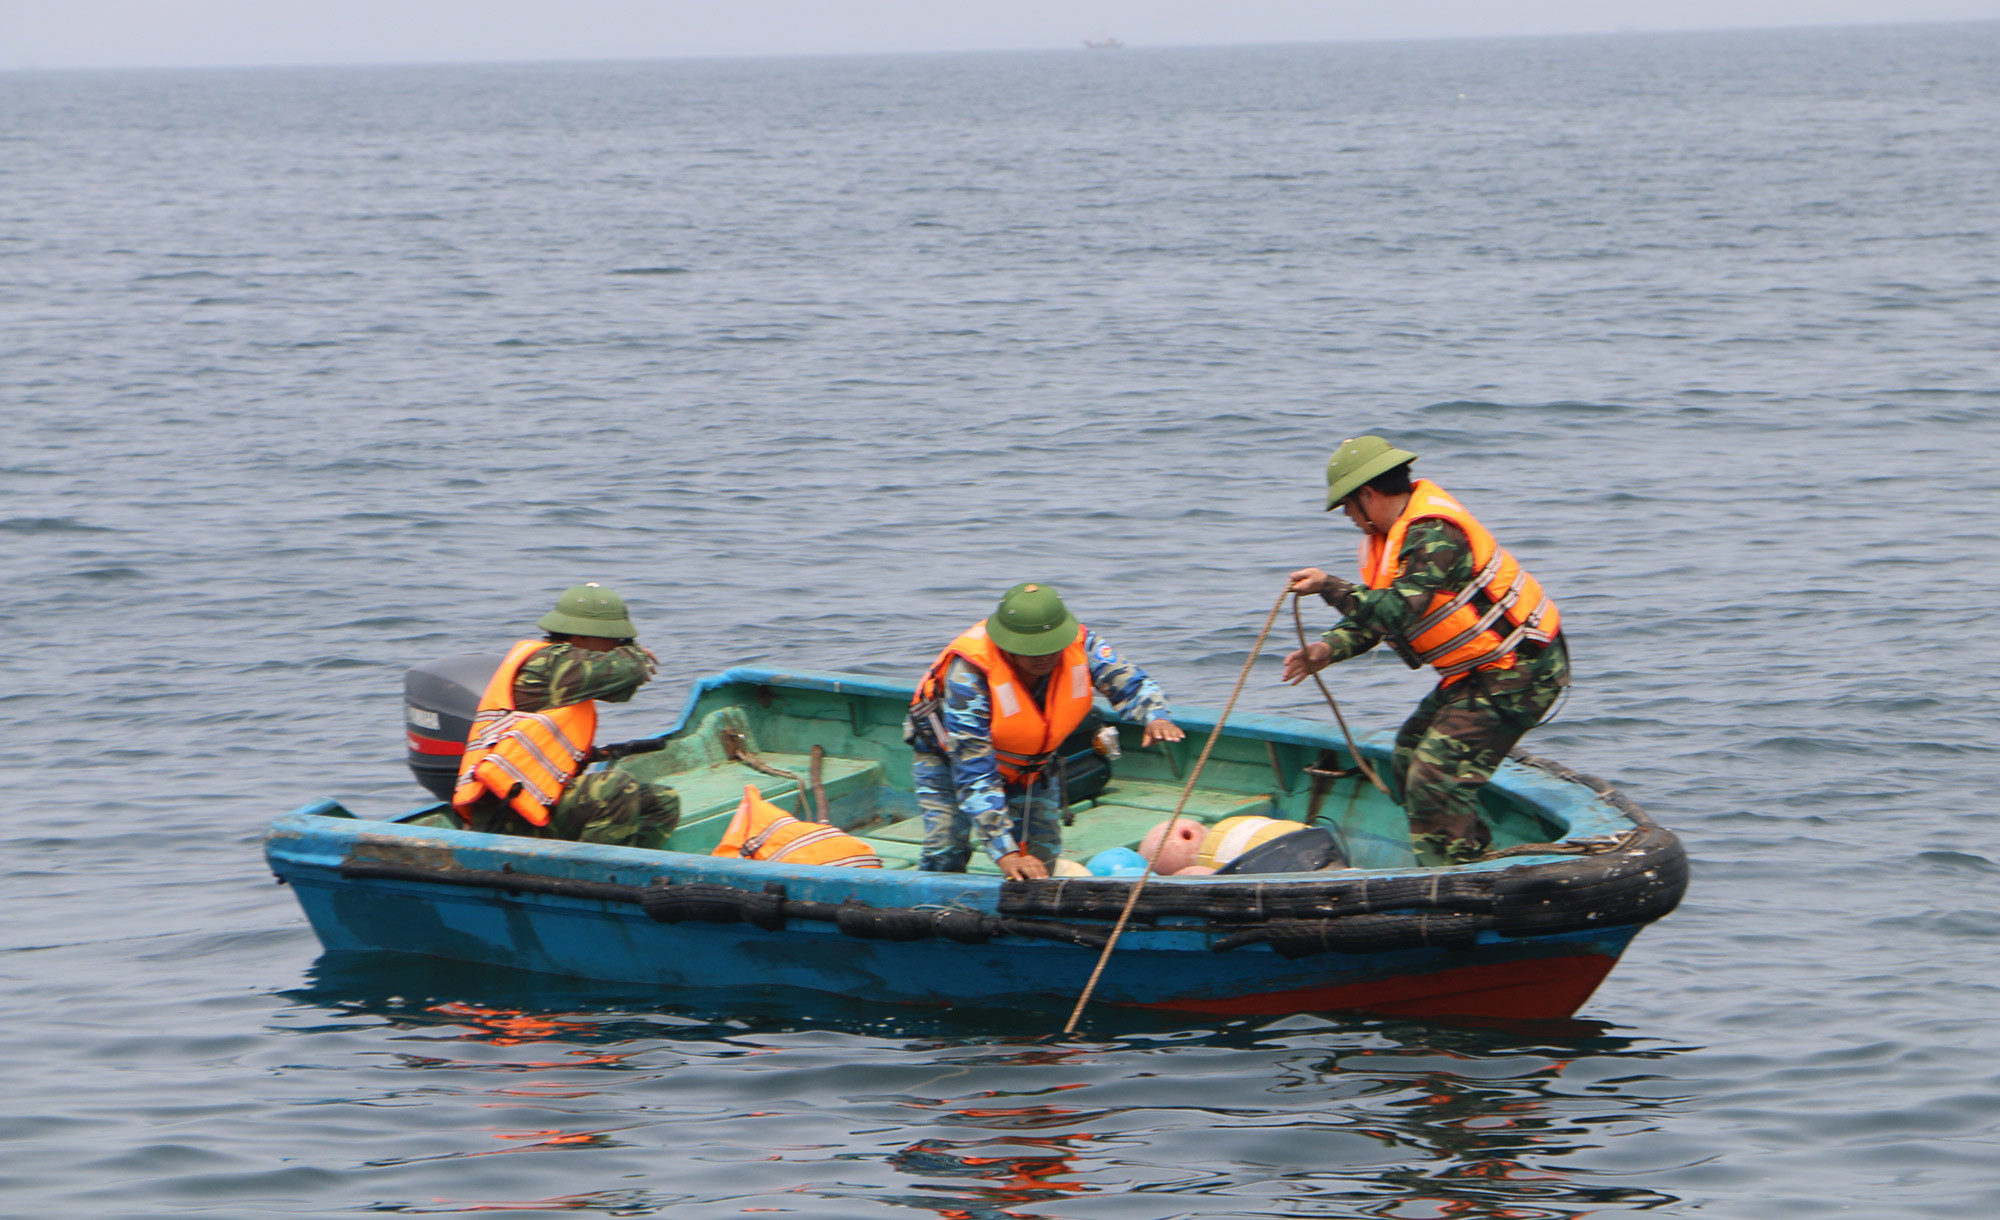 Xử lý cắt phao và ngư lưới cụ vứt lại nhằm trả lại tự nhiên cho môi trường biển. Ảnh: N.H